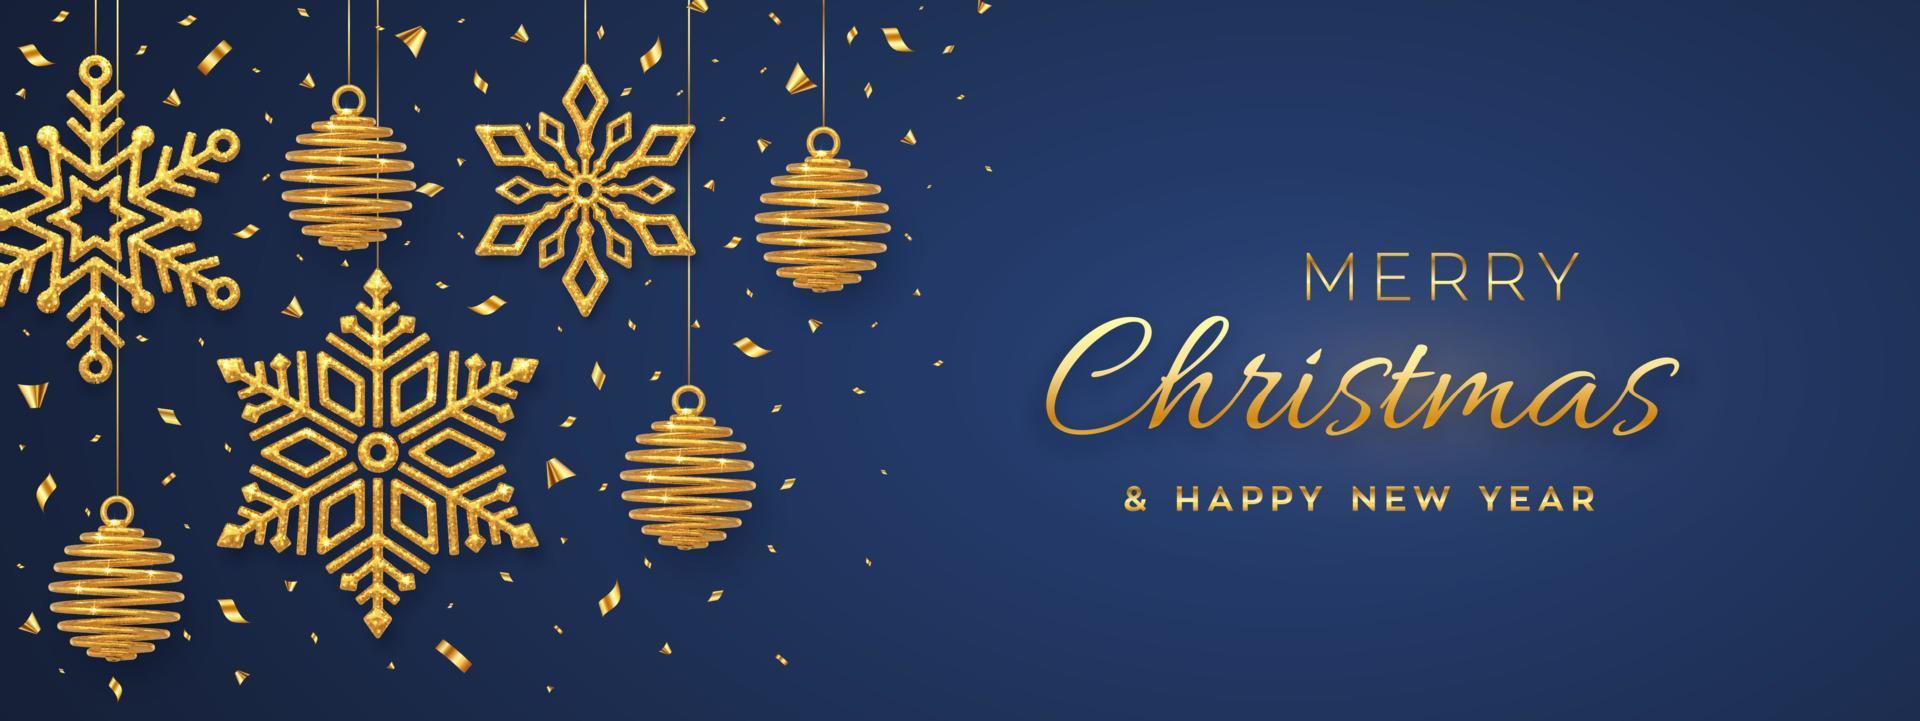 Kerst blauwe achtergrond met hangende glanzende gouden sneeuwvlokken en ballen. vrolijk kerstfeest wenskaart. vakantie kerstmis en nieuwjaar poster, webbanner. vector illustratie.